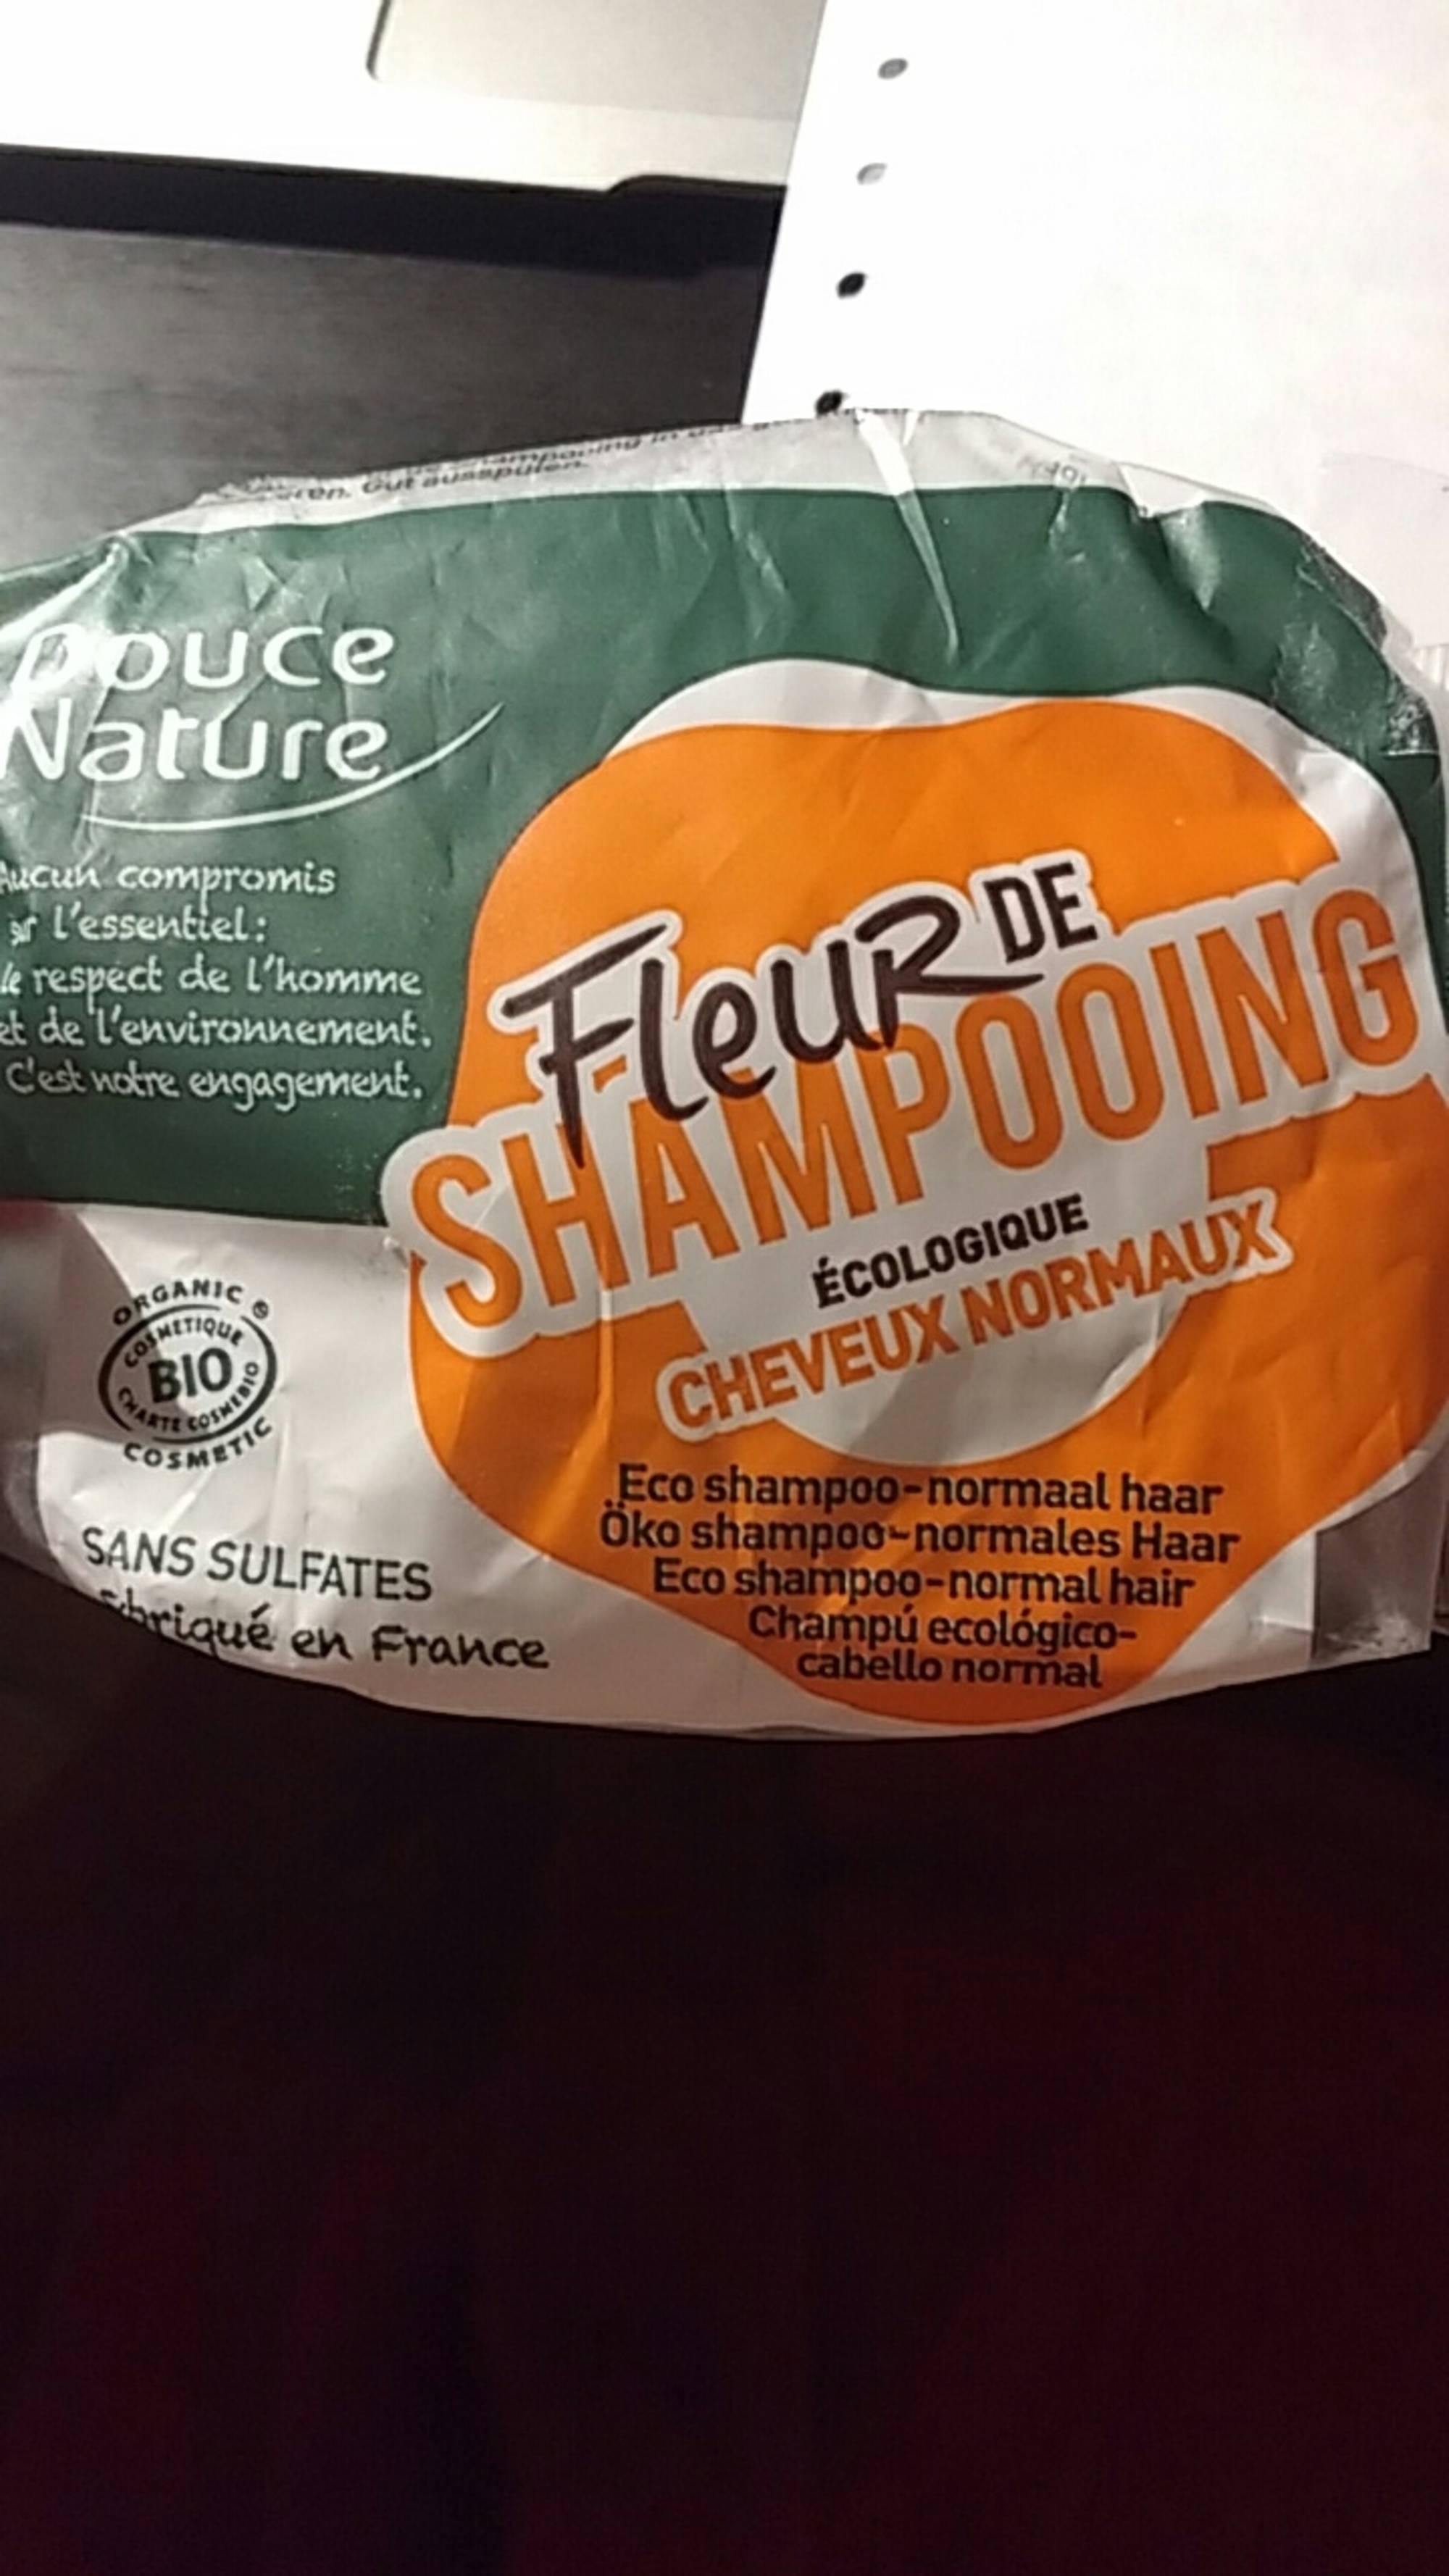 DOUCE NATURE - Fleur de shampooing